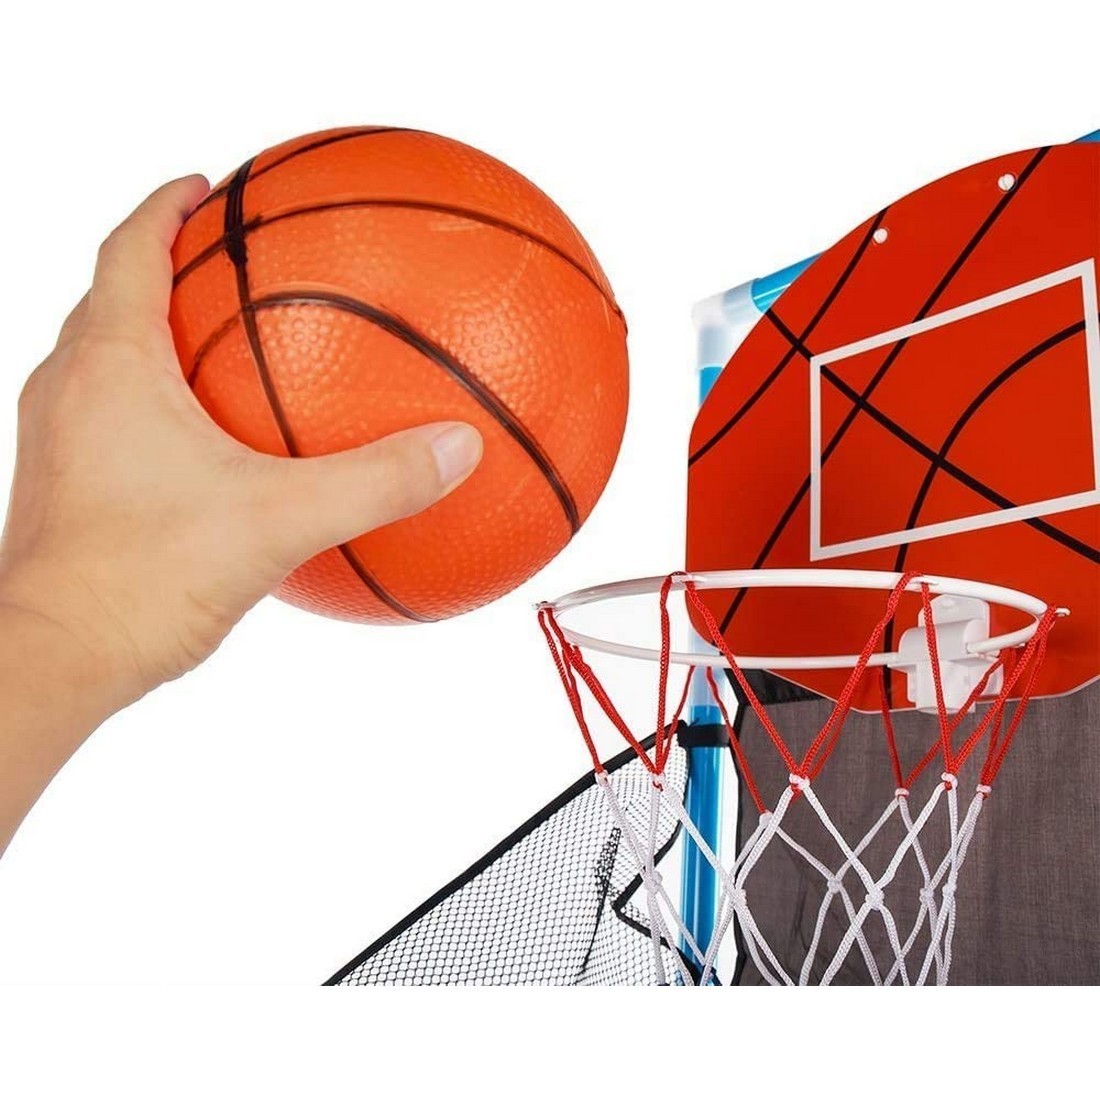 キッズバスケットゴール ボールセット 子供向け 屋内 簡単な組み立て 空気入れ付き_画像2